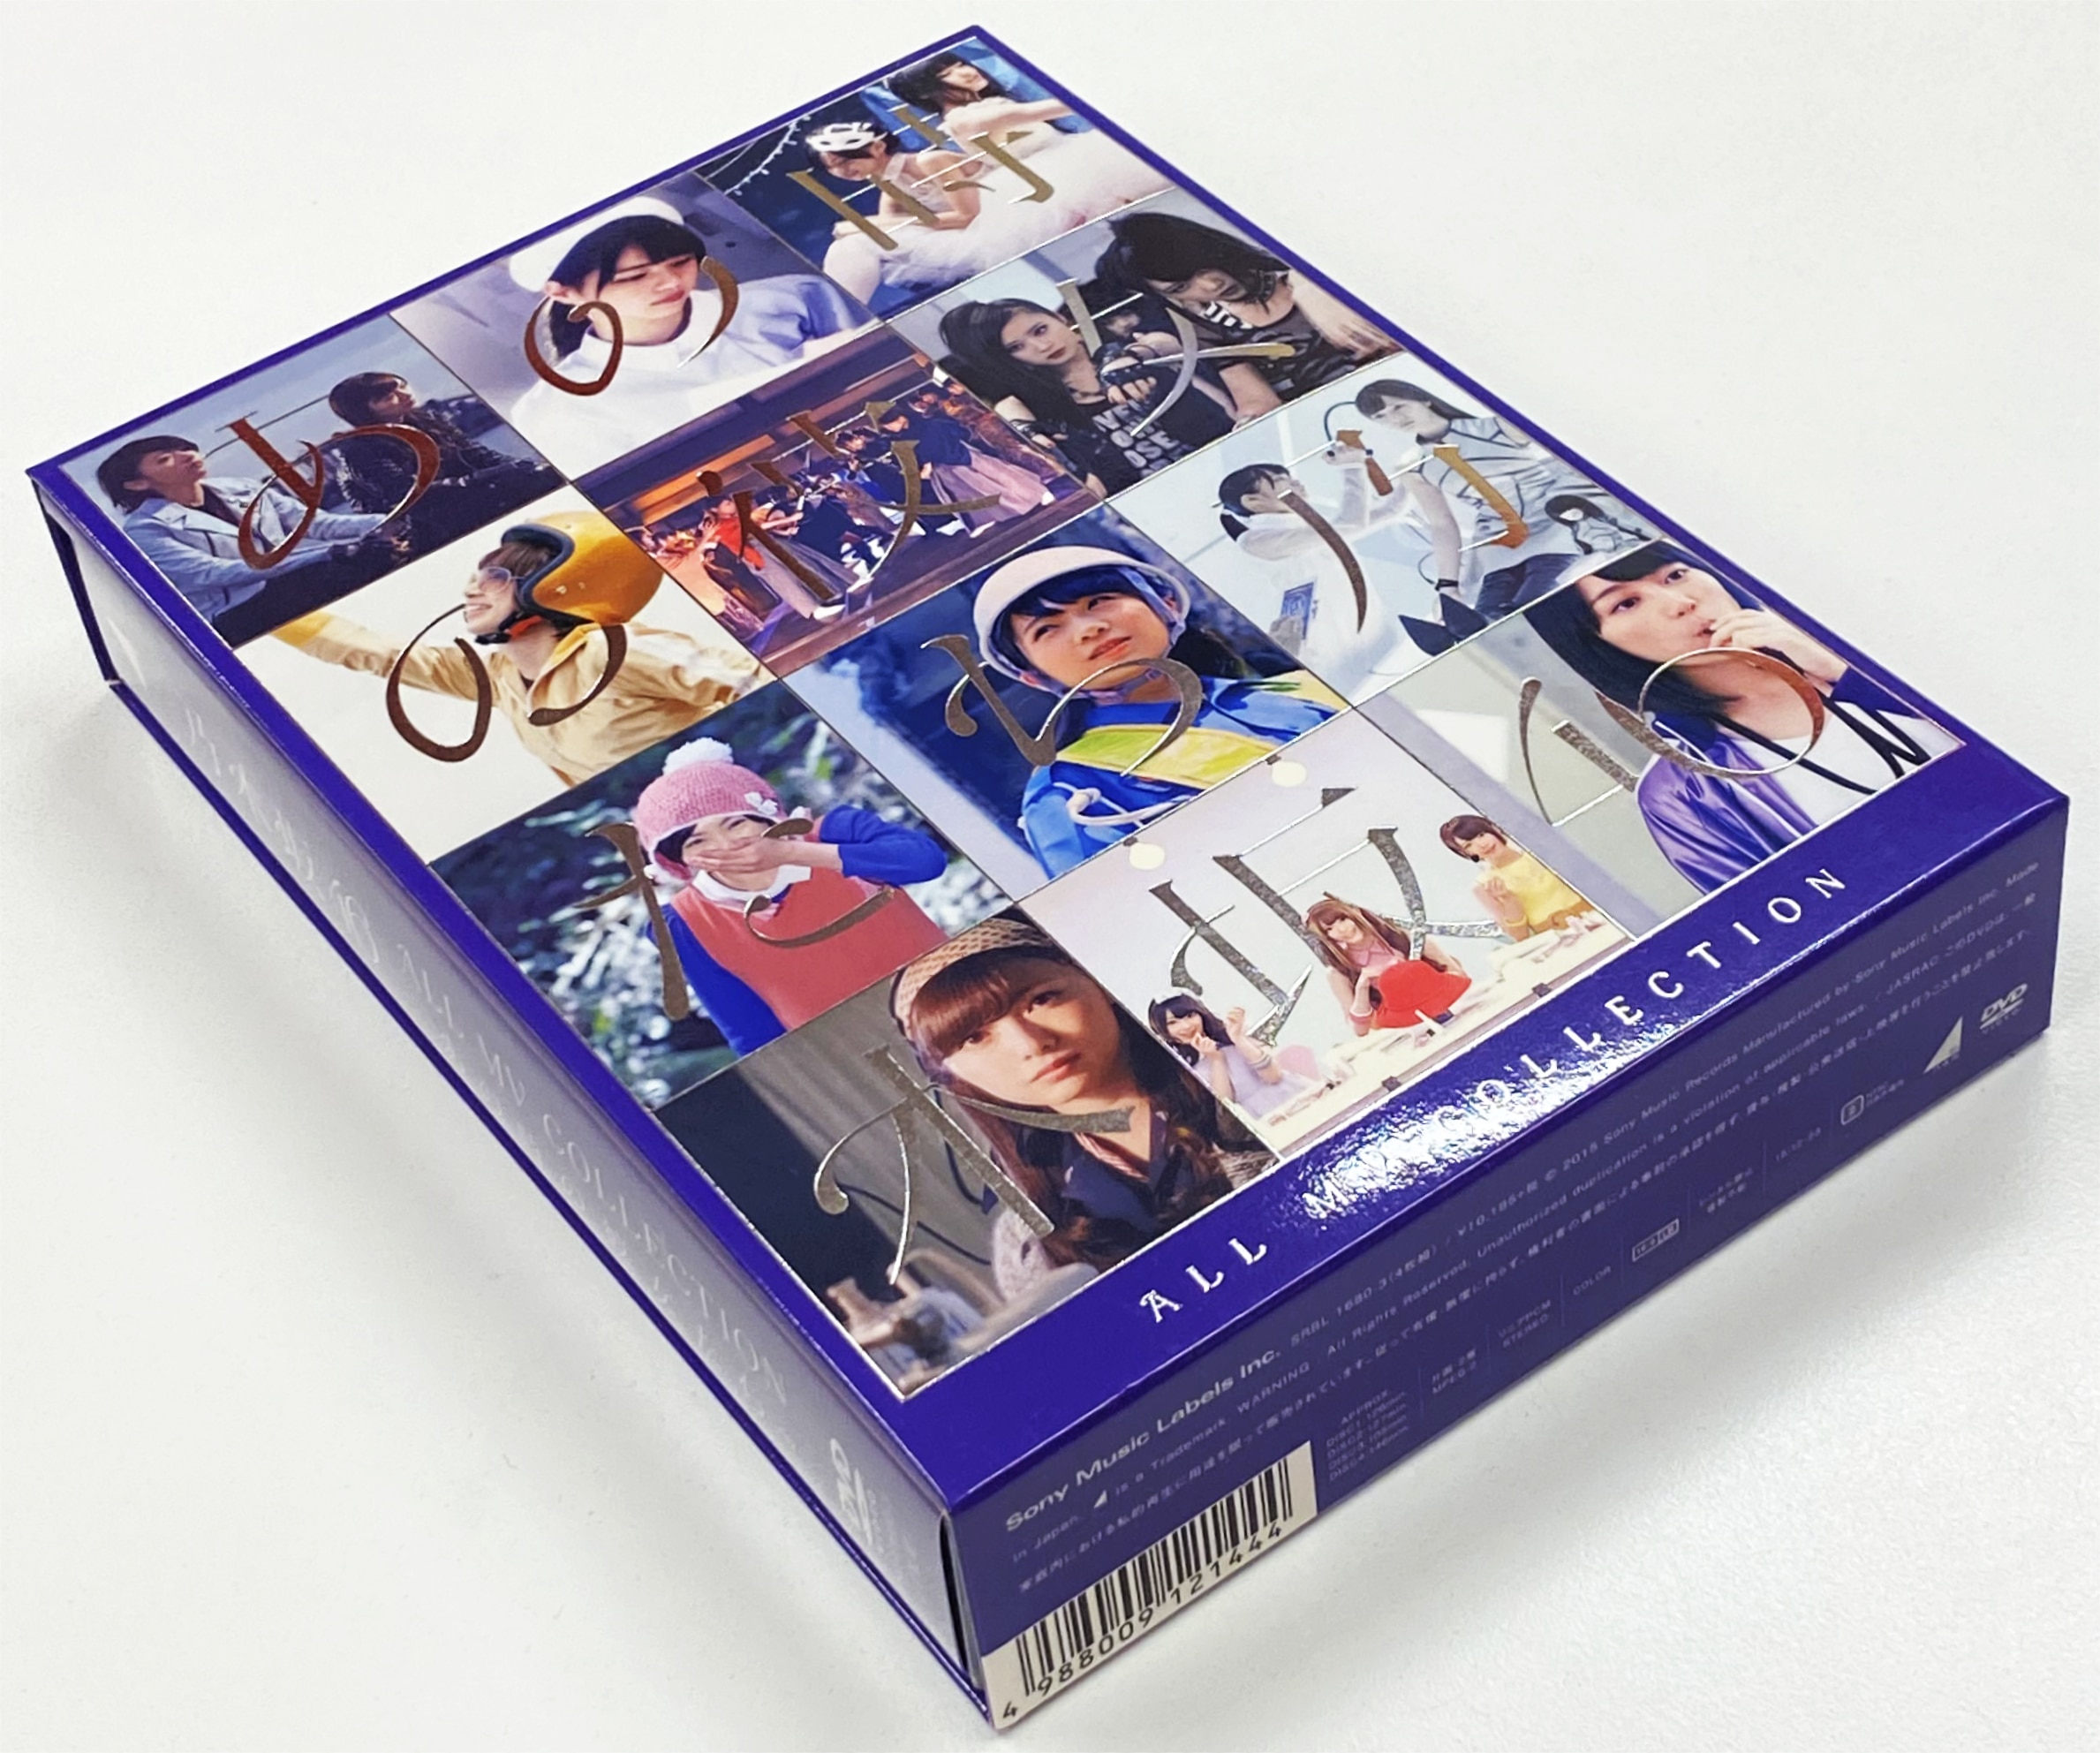 乃木坂46 DVD ALL MV COLLECTION -あの時の彼女たち- 完全生産限定盤